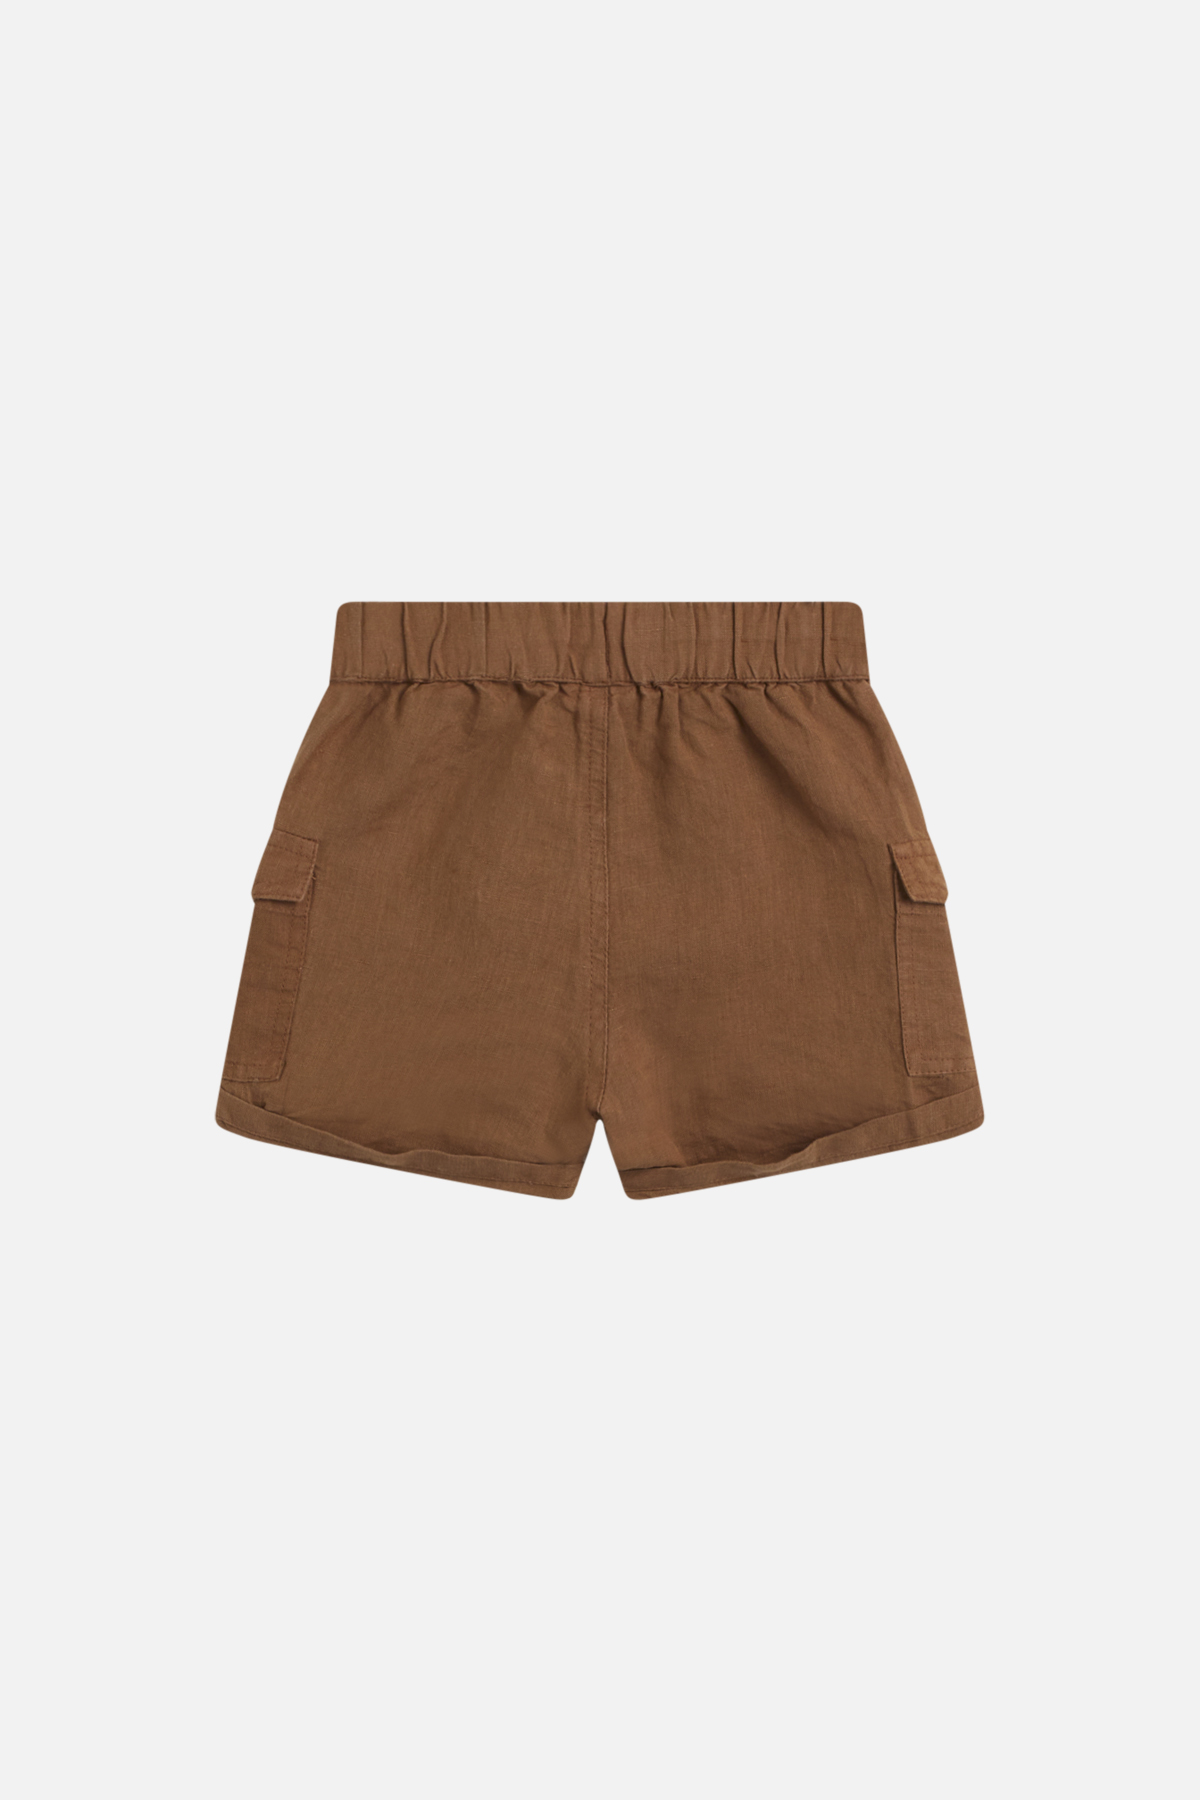 Hakon Shorts, Acorn, 104 cm